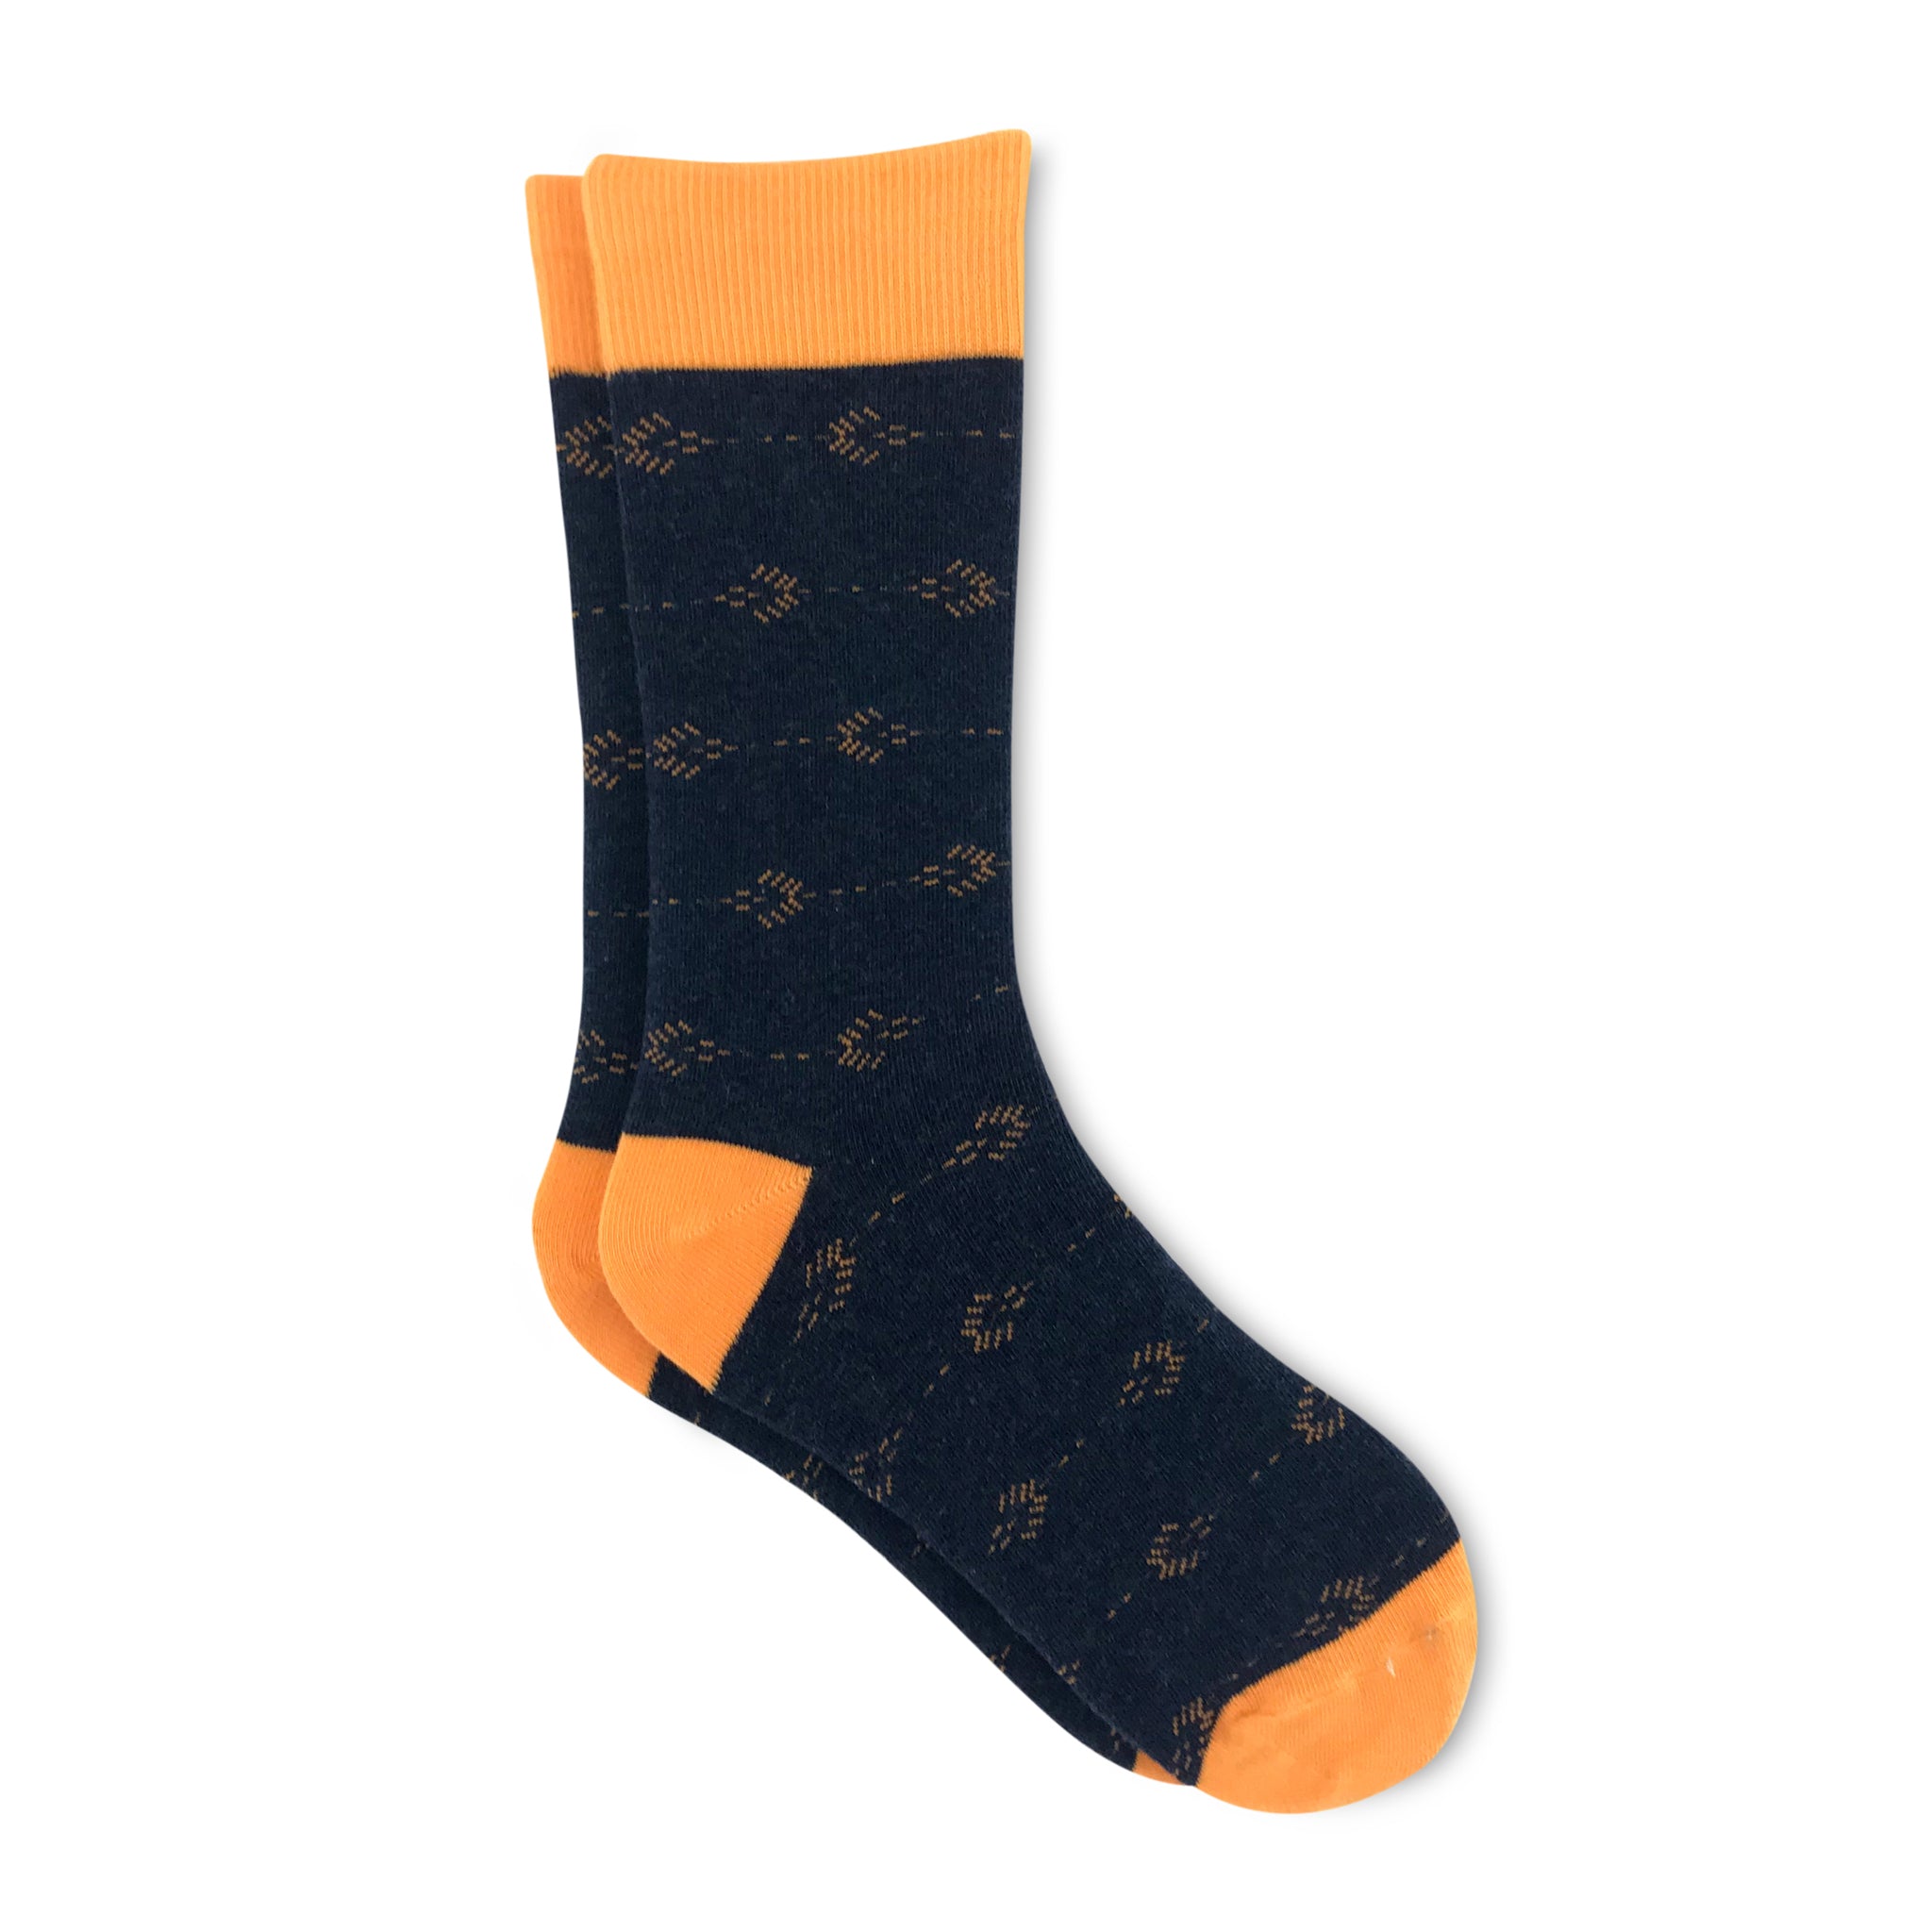 Funky & Fun Socks for Men | Society Socks